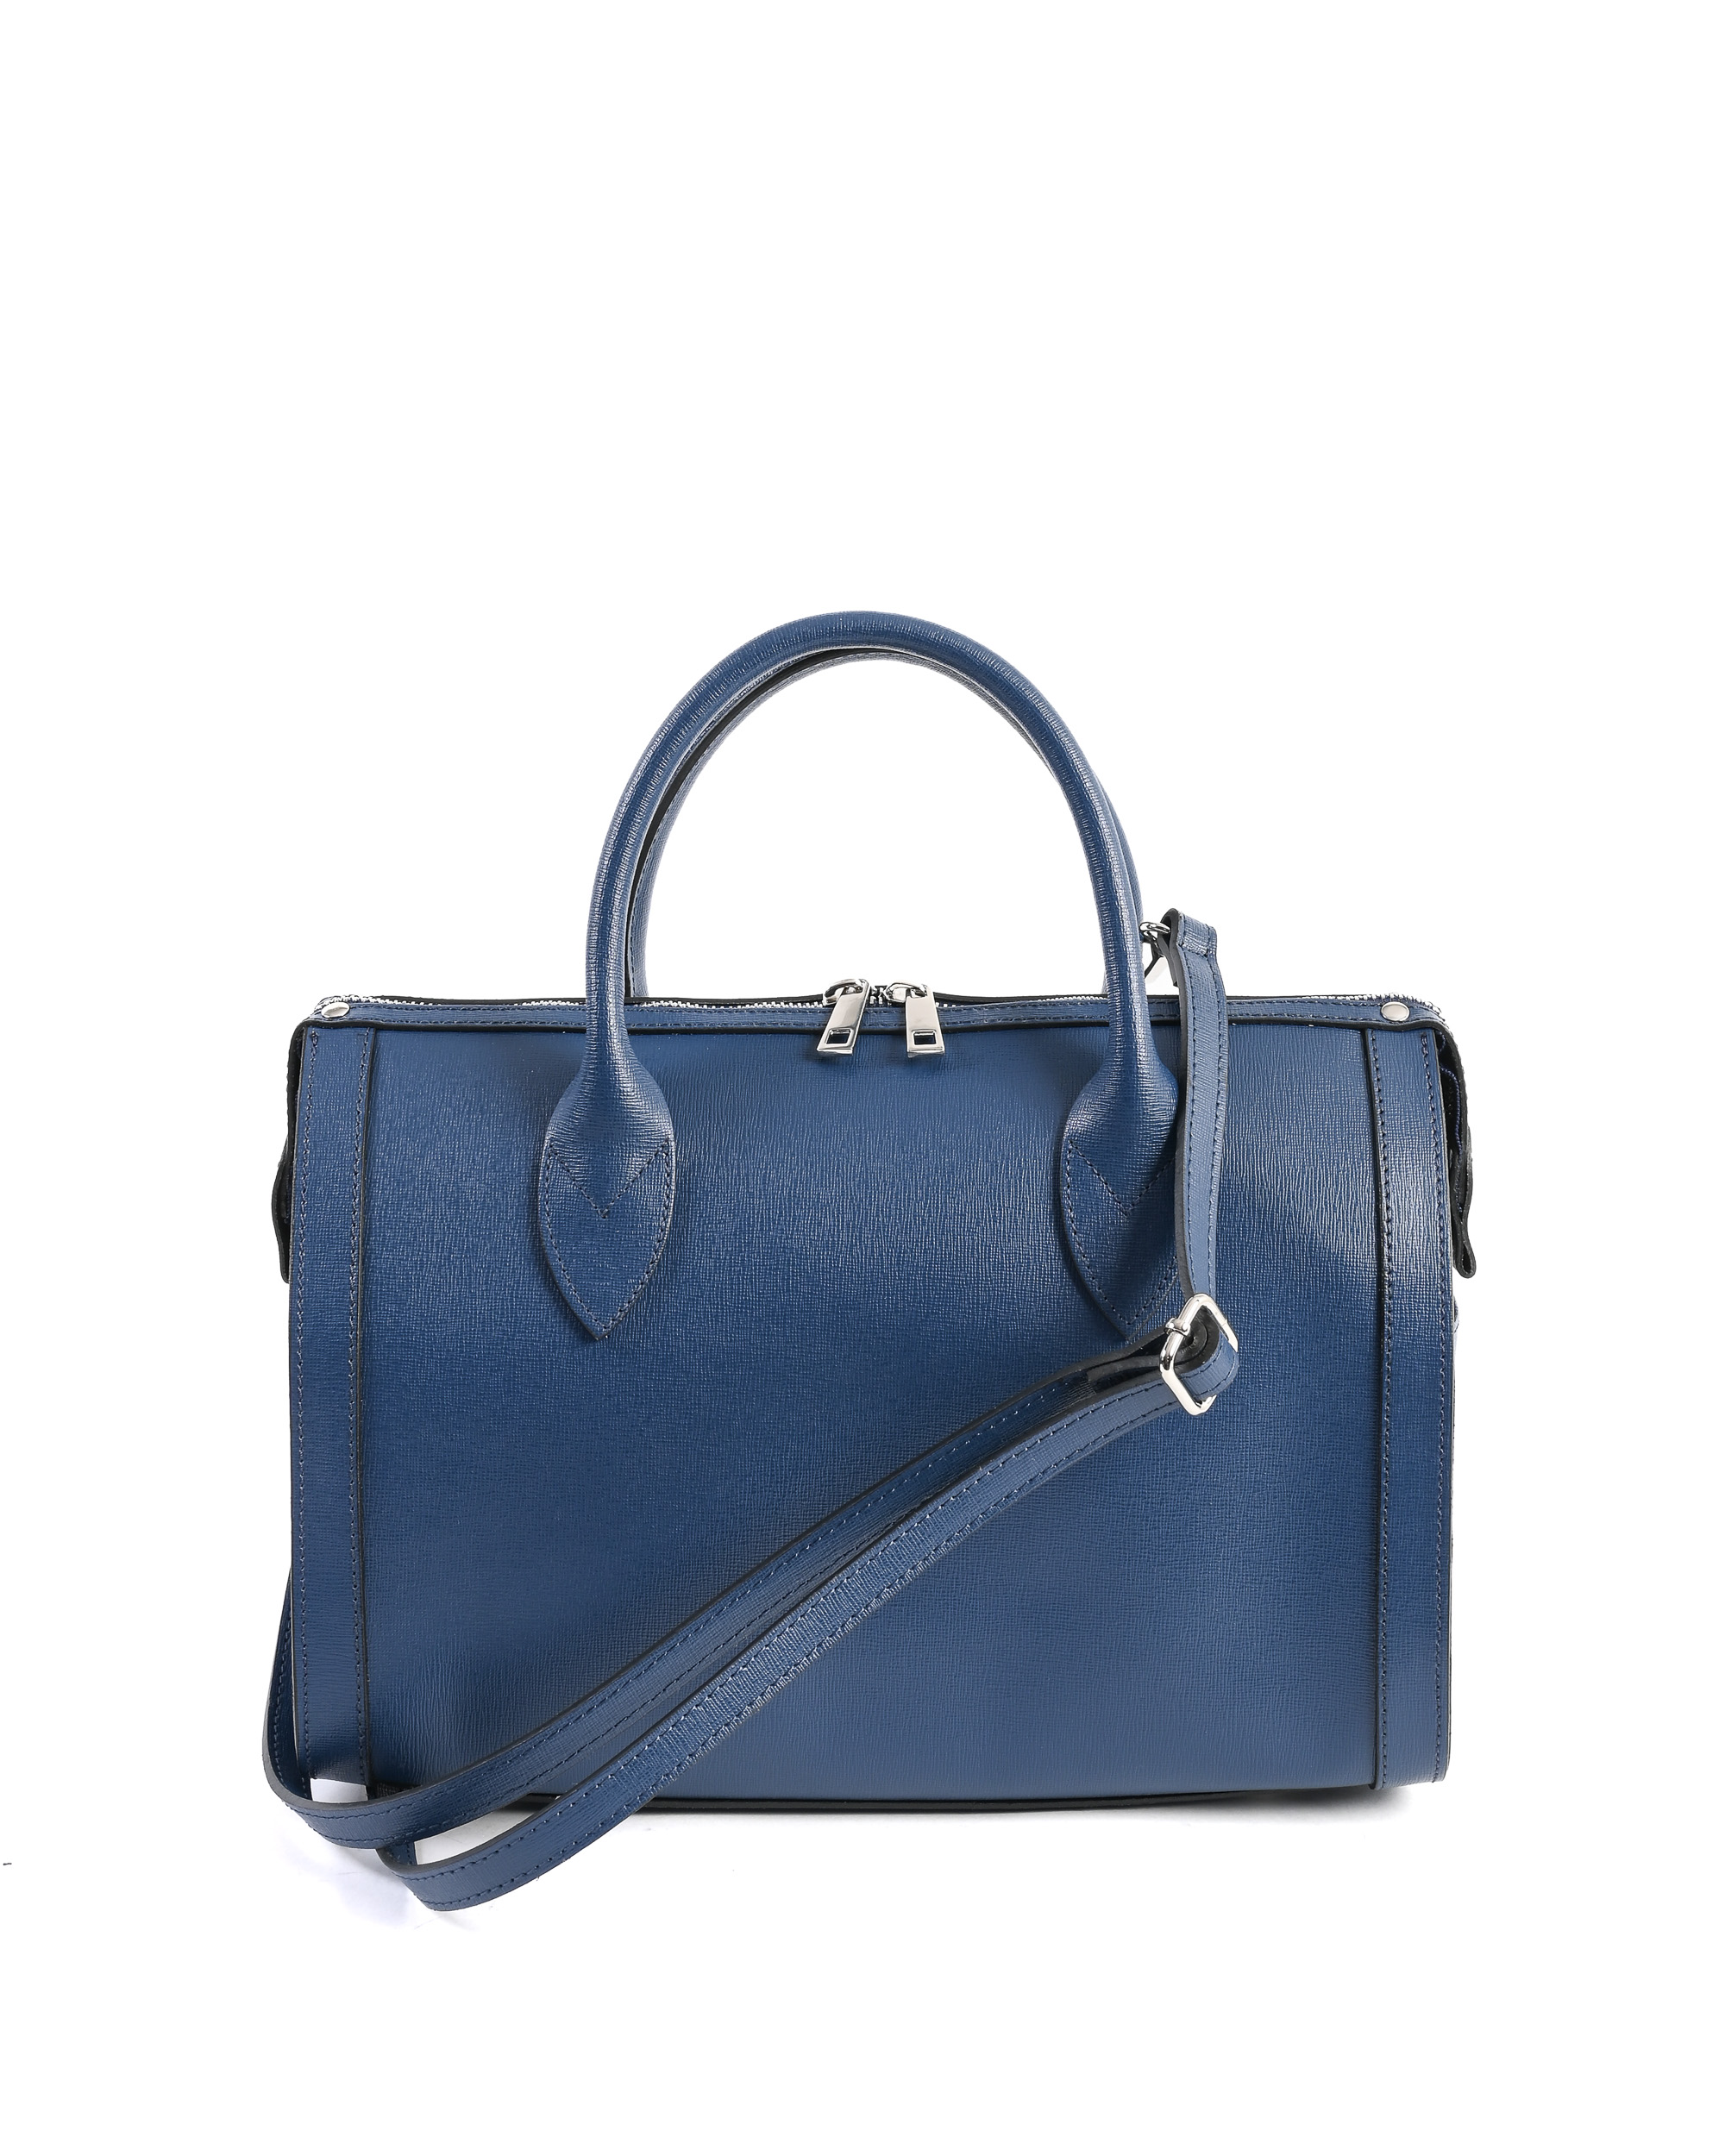 Blue Saffiano Leather Handbag